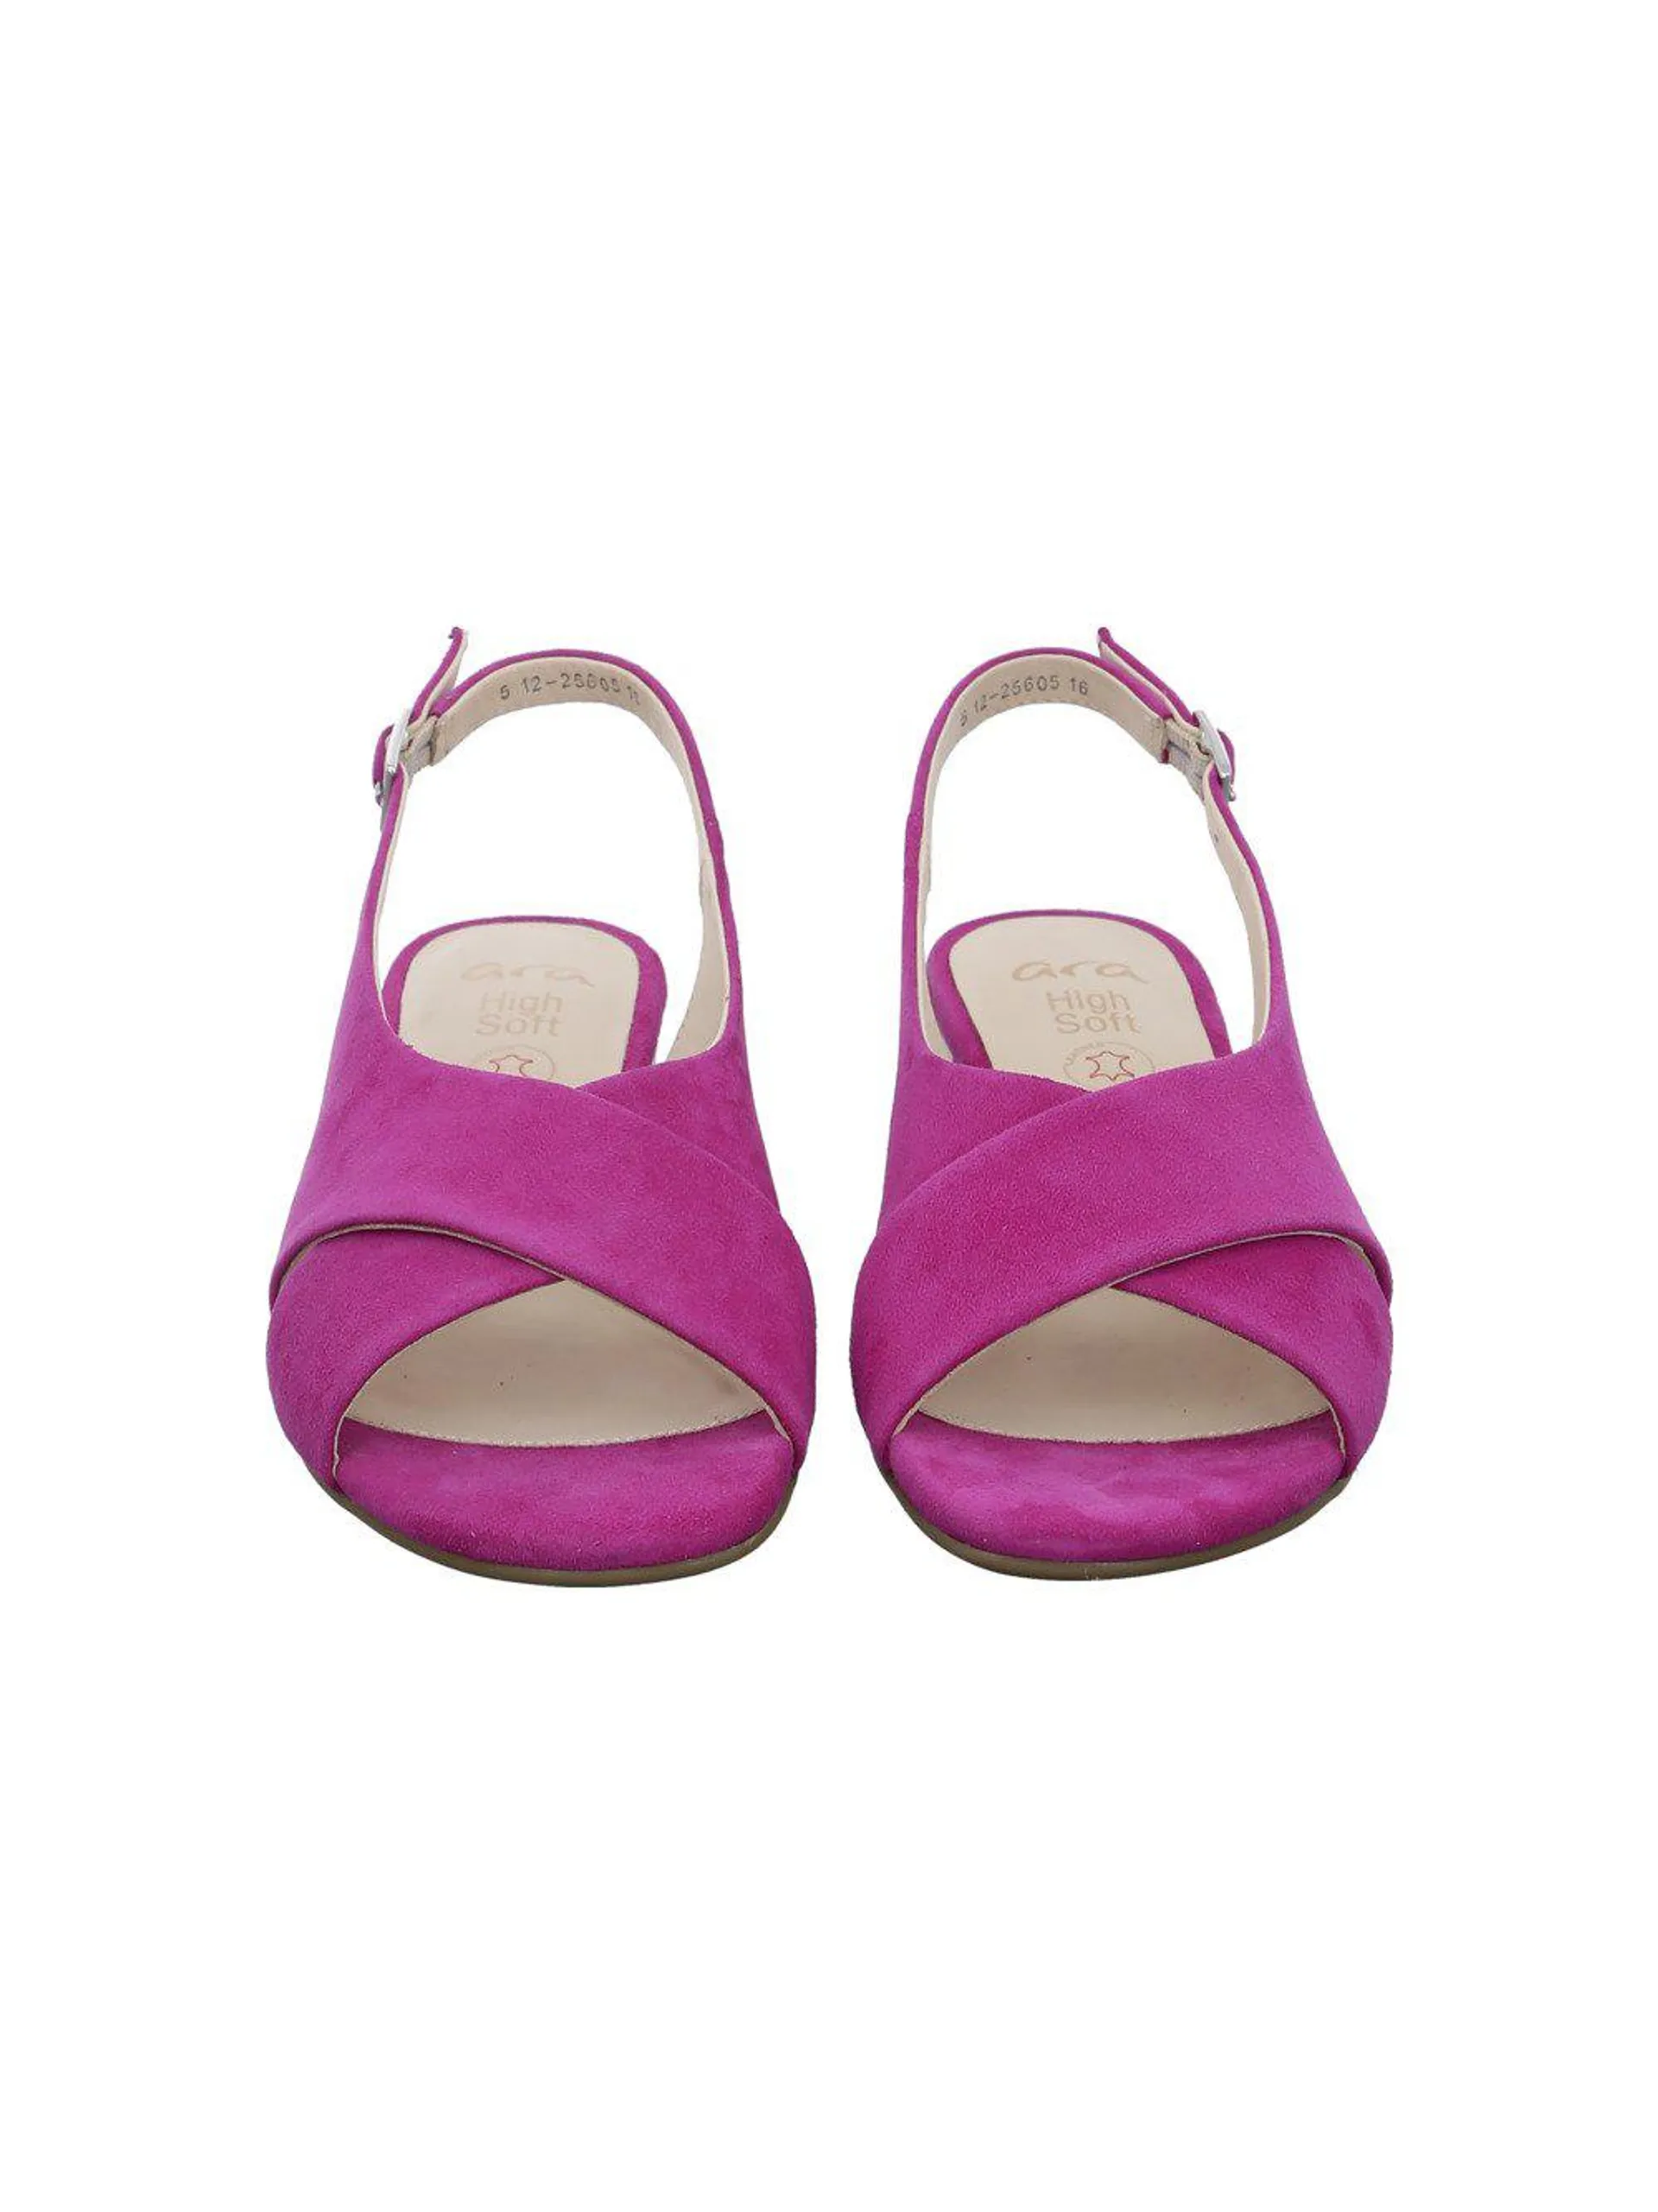 Damen Sandale Prato pink